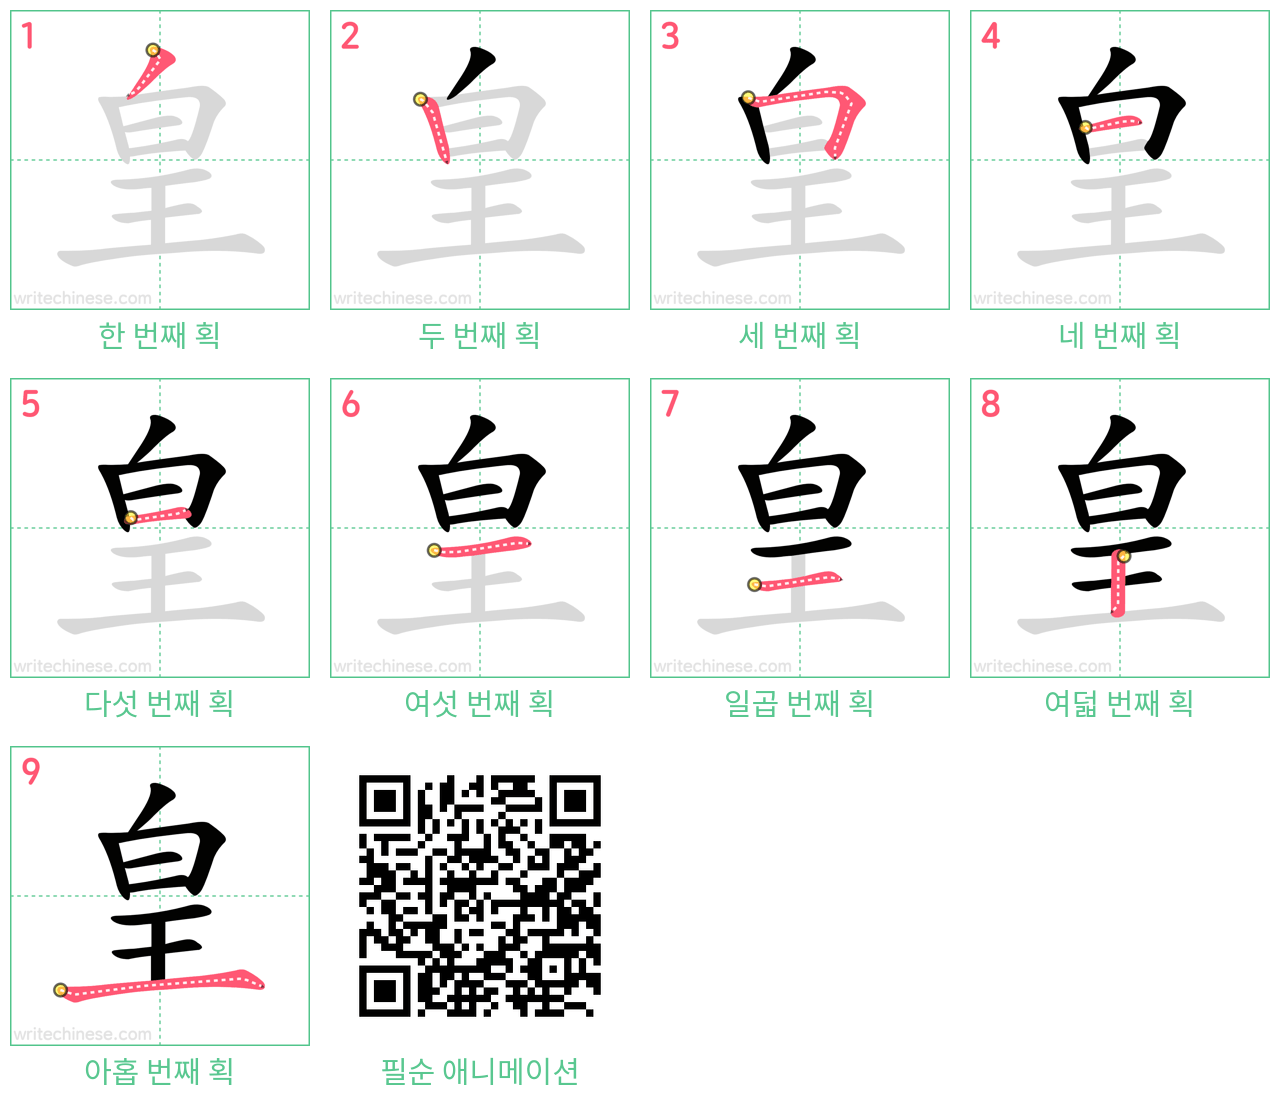 皇 step-by-step stroke order diagrams